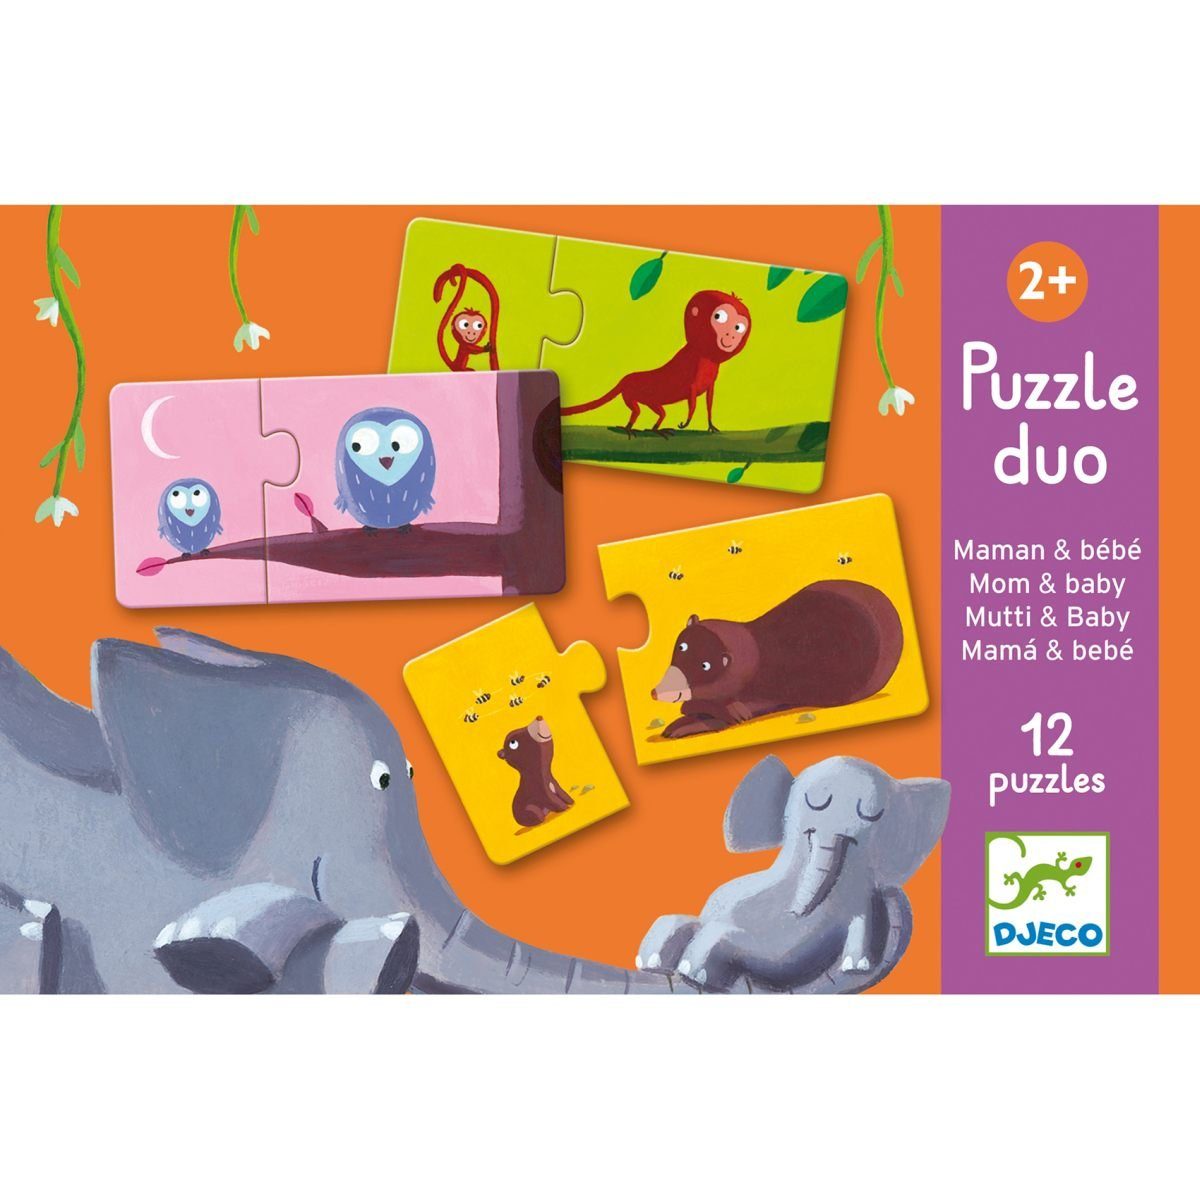 Puzzle ab Lernspiel für Puzzleteile 2 2 Kinder Puzzle Duo DJECO Assoziationsspiel Jahren,